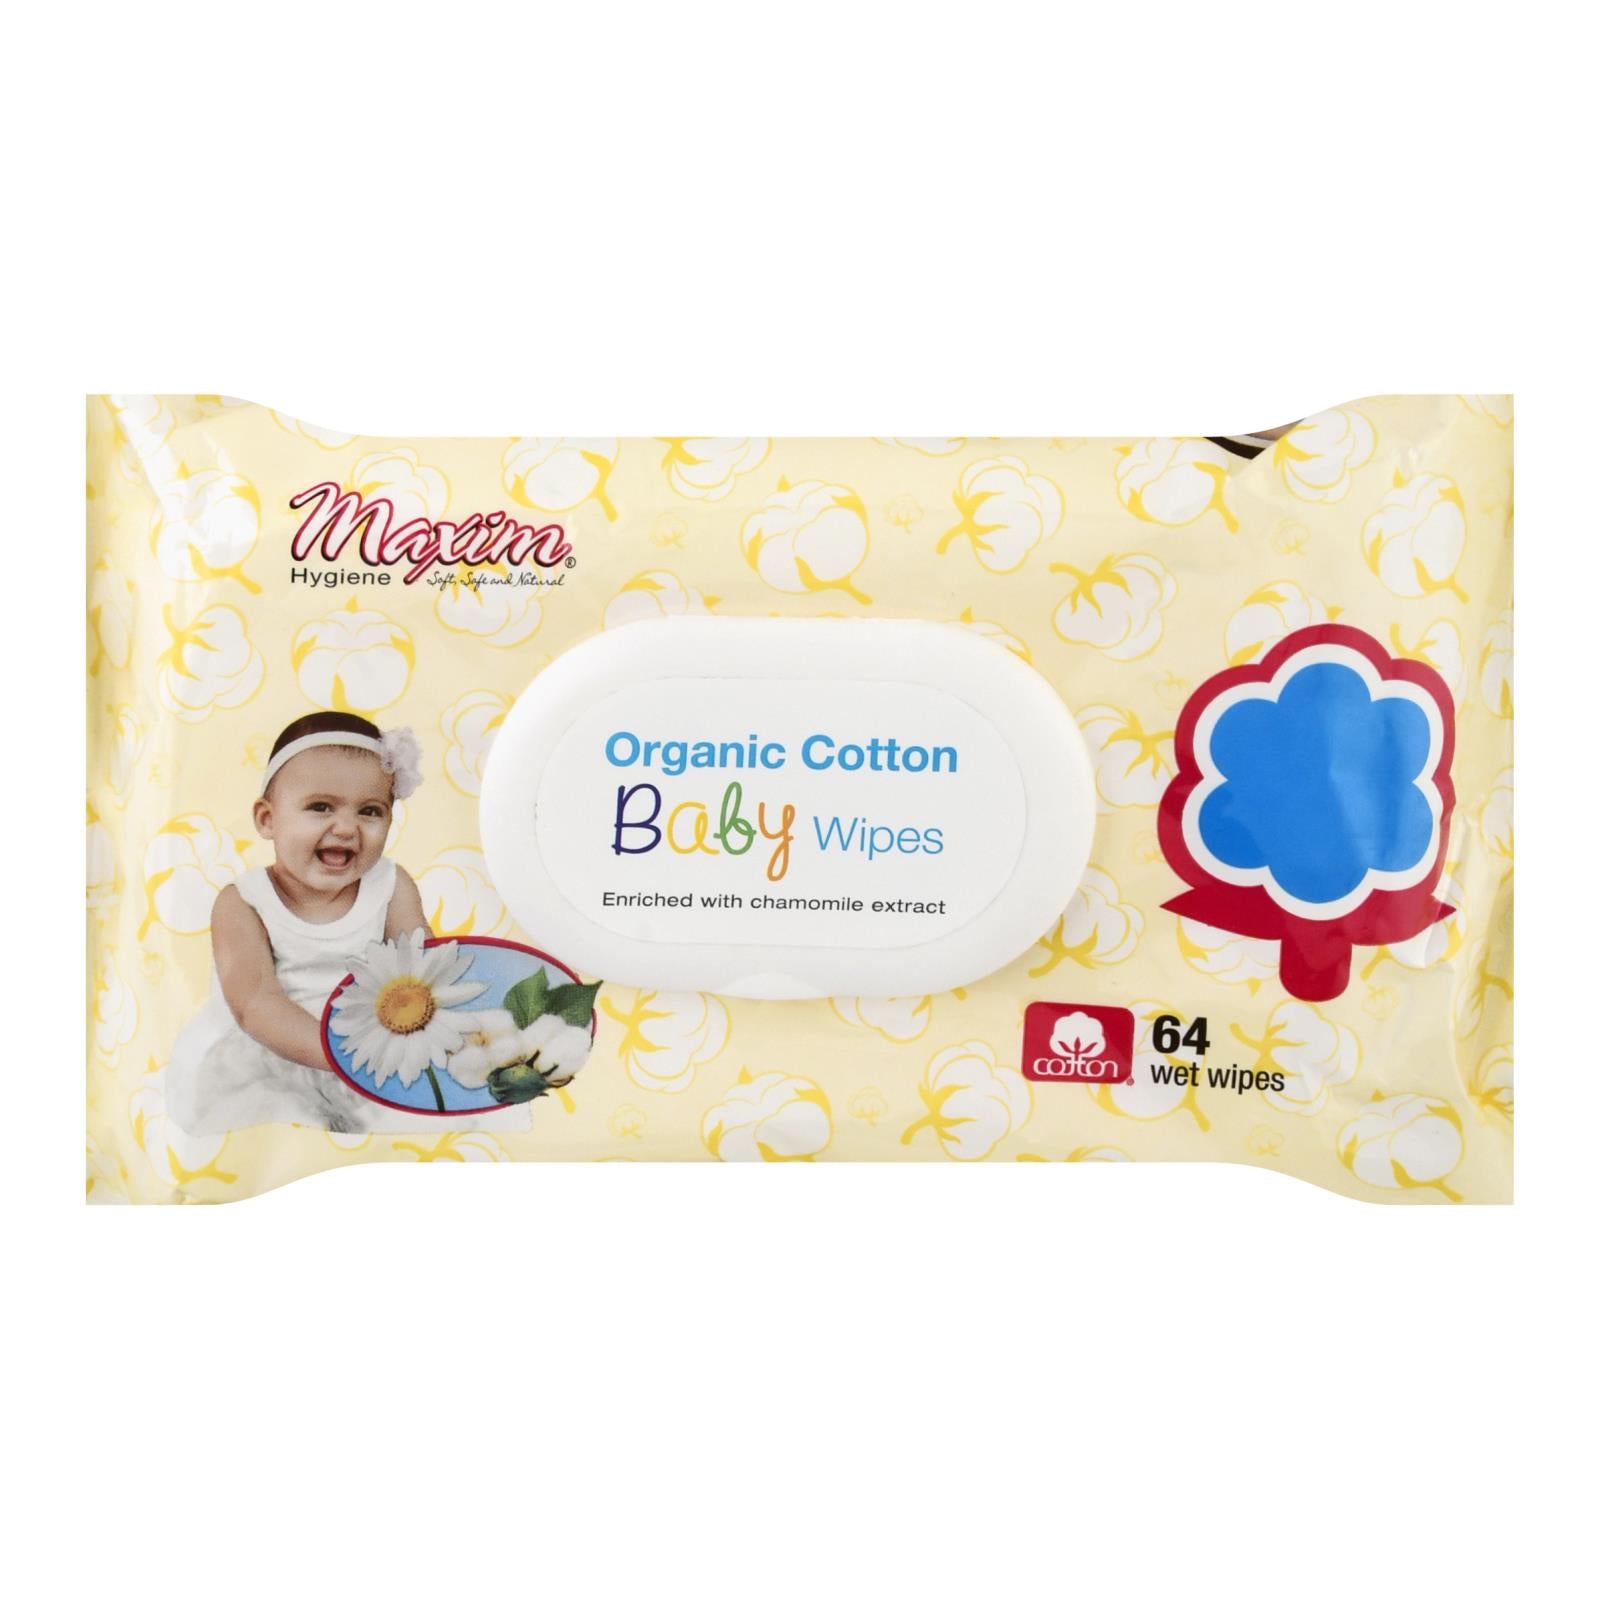 Produits d'hygiène Maxim, Maxim Hygiene Products - Lingettes en coton pour bébé - caisse de 12 - 64 CT (paquet de 12)